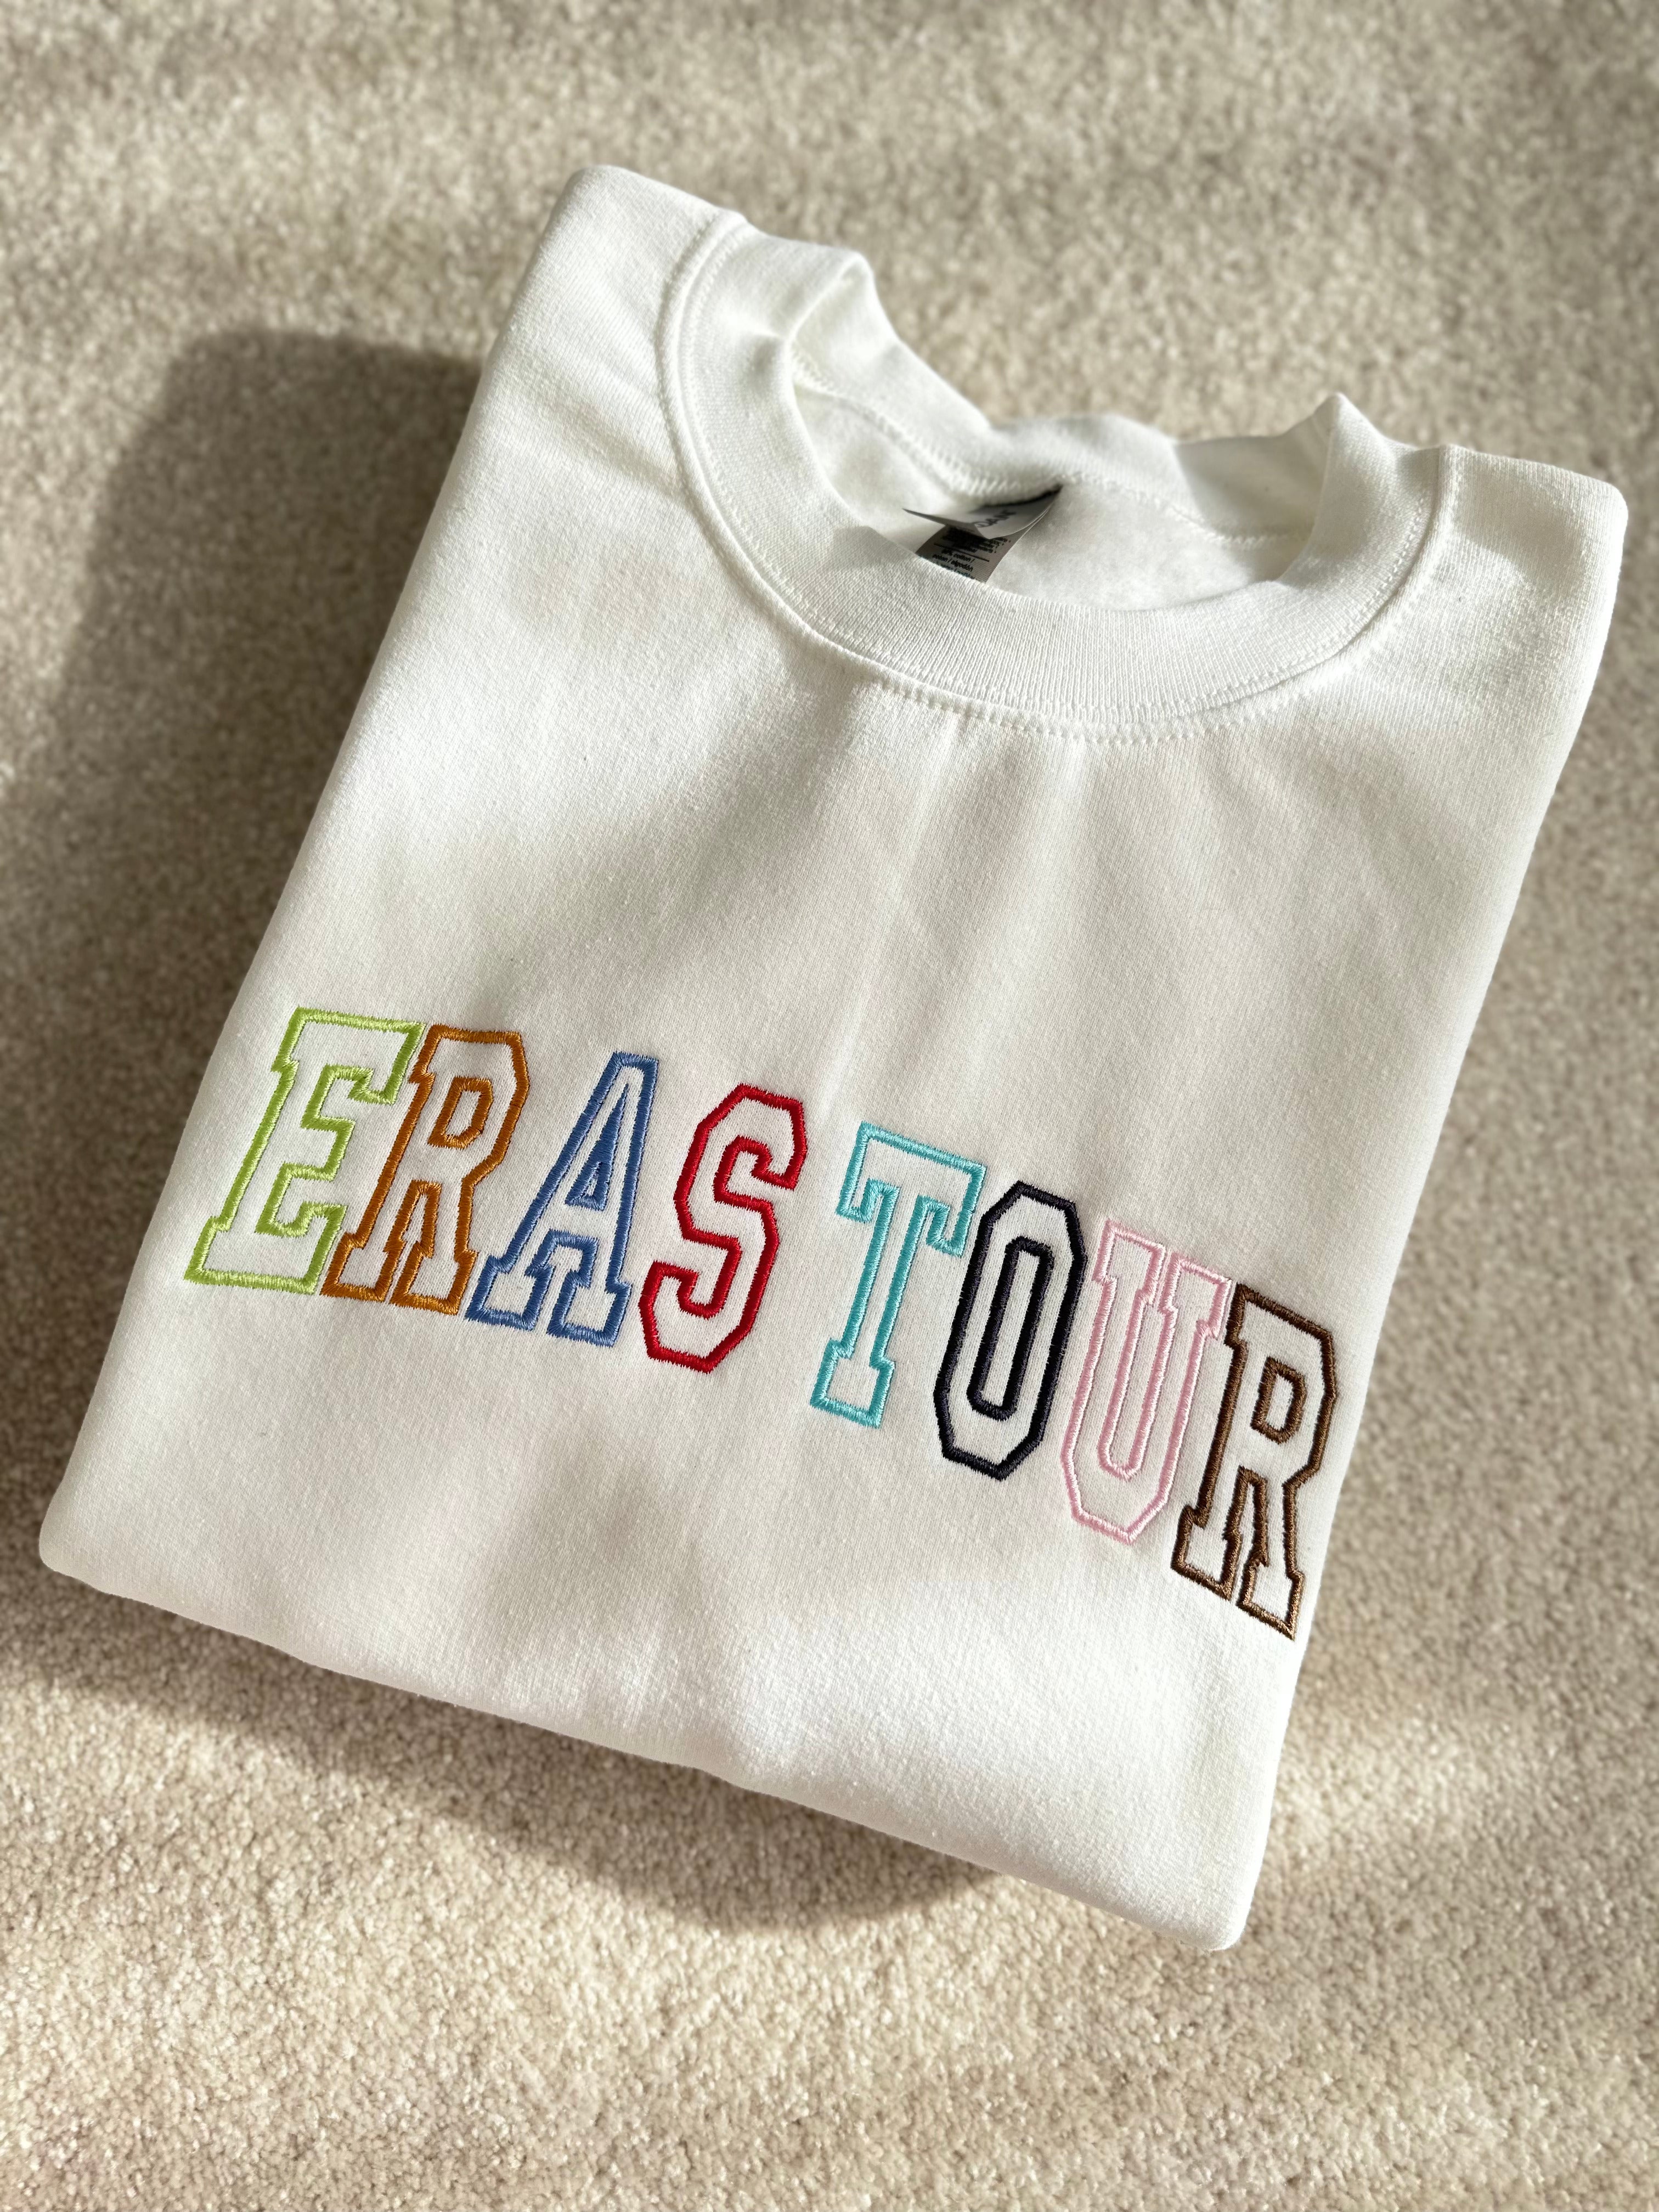 ERAS TOUR Taylor's Version Embroidered Sweatshirt